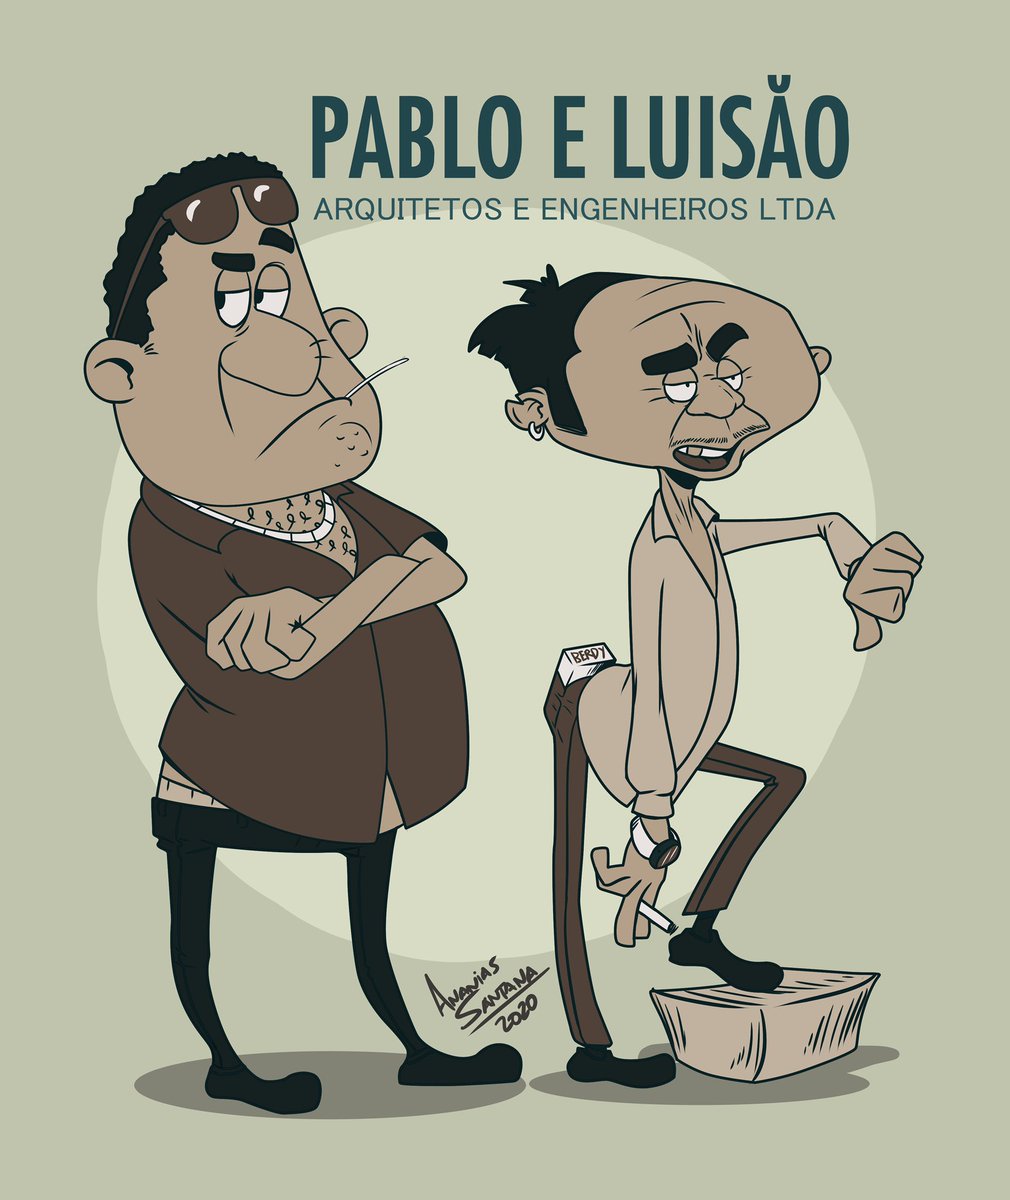 Histórias de Pablo e Luisão eternizadas no Twitter por Paulo Vieira vão  virar série - NerdBunker